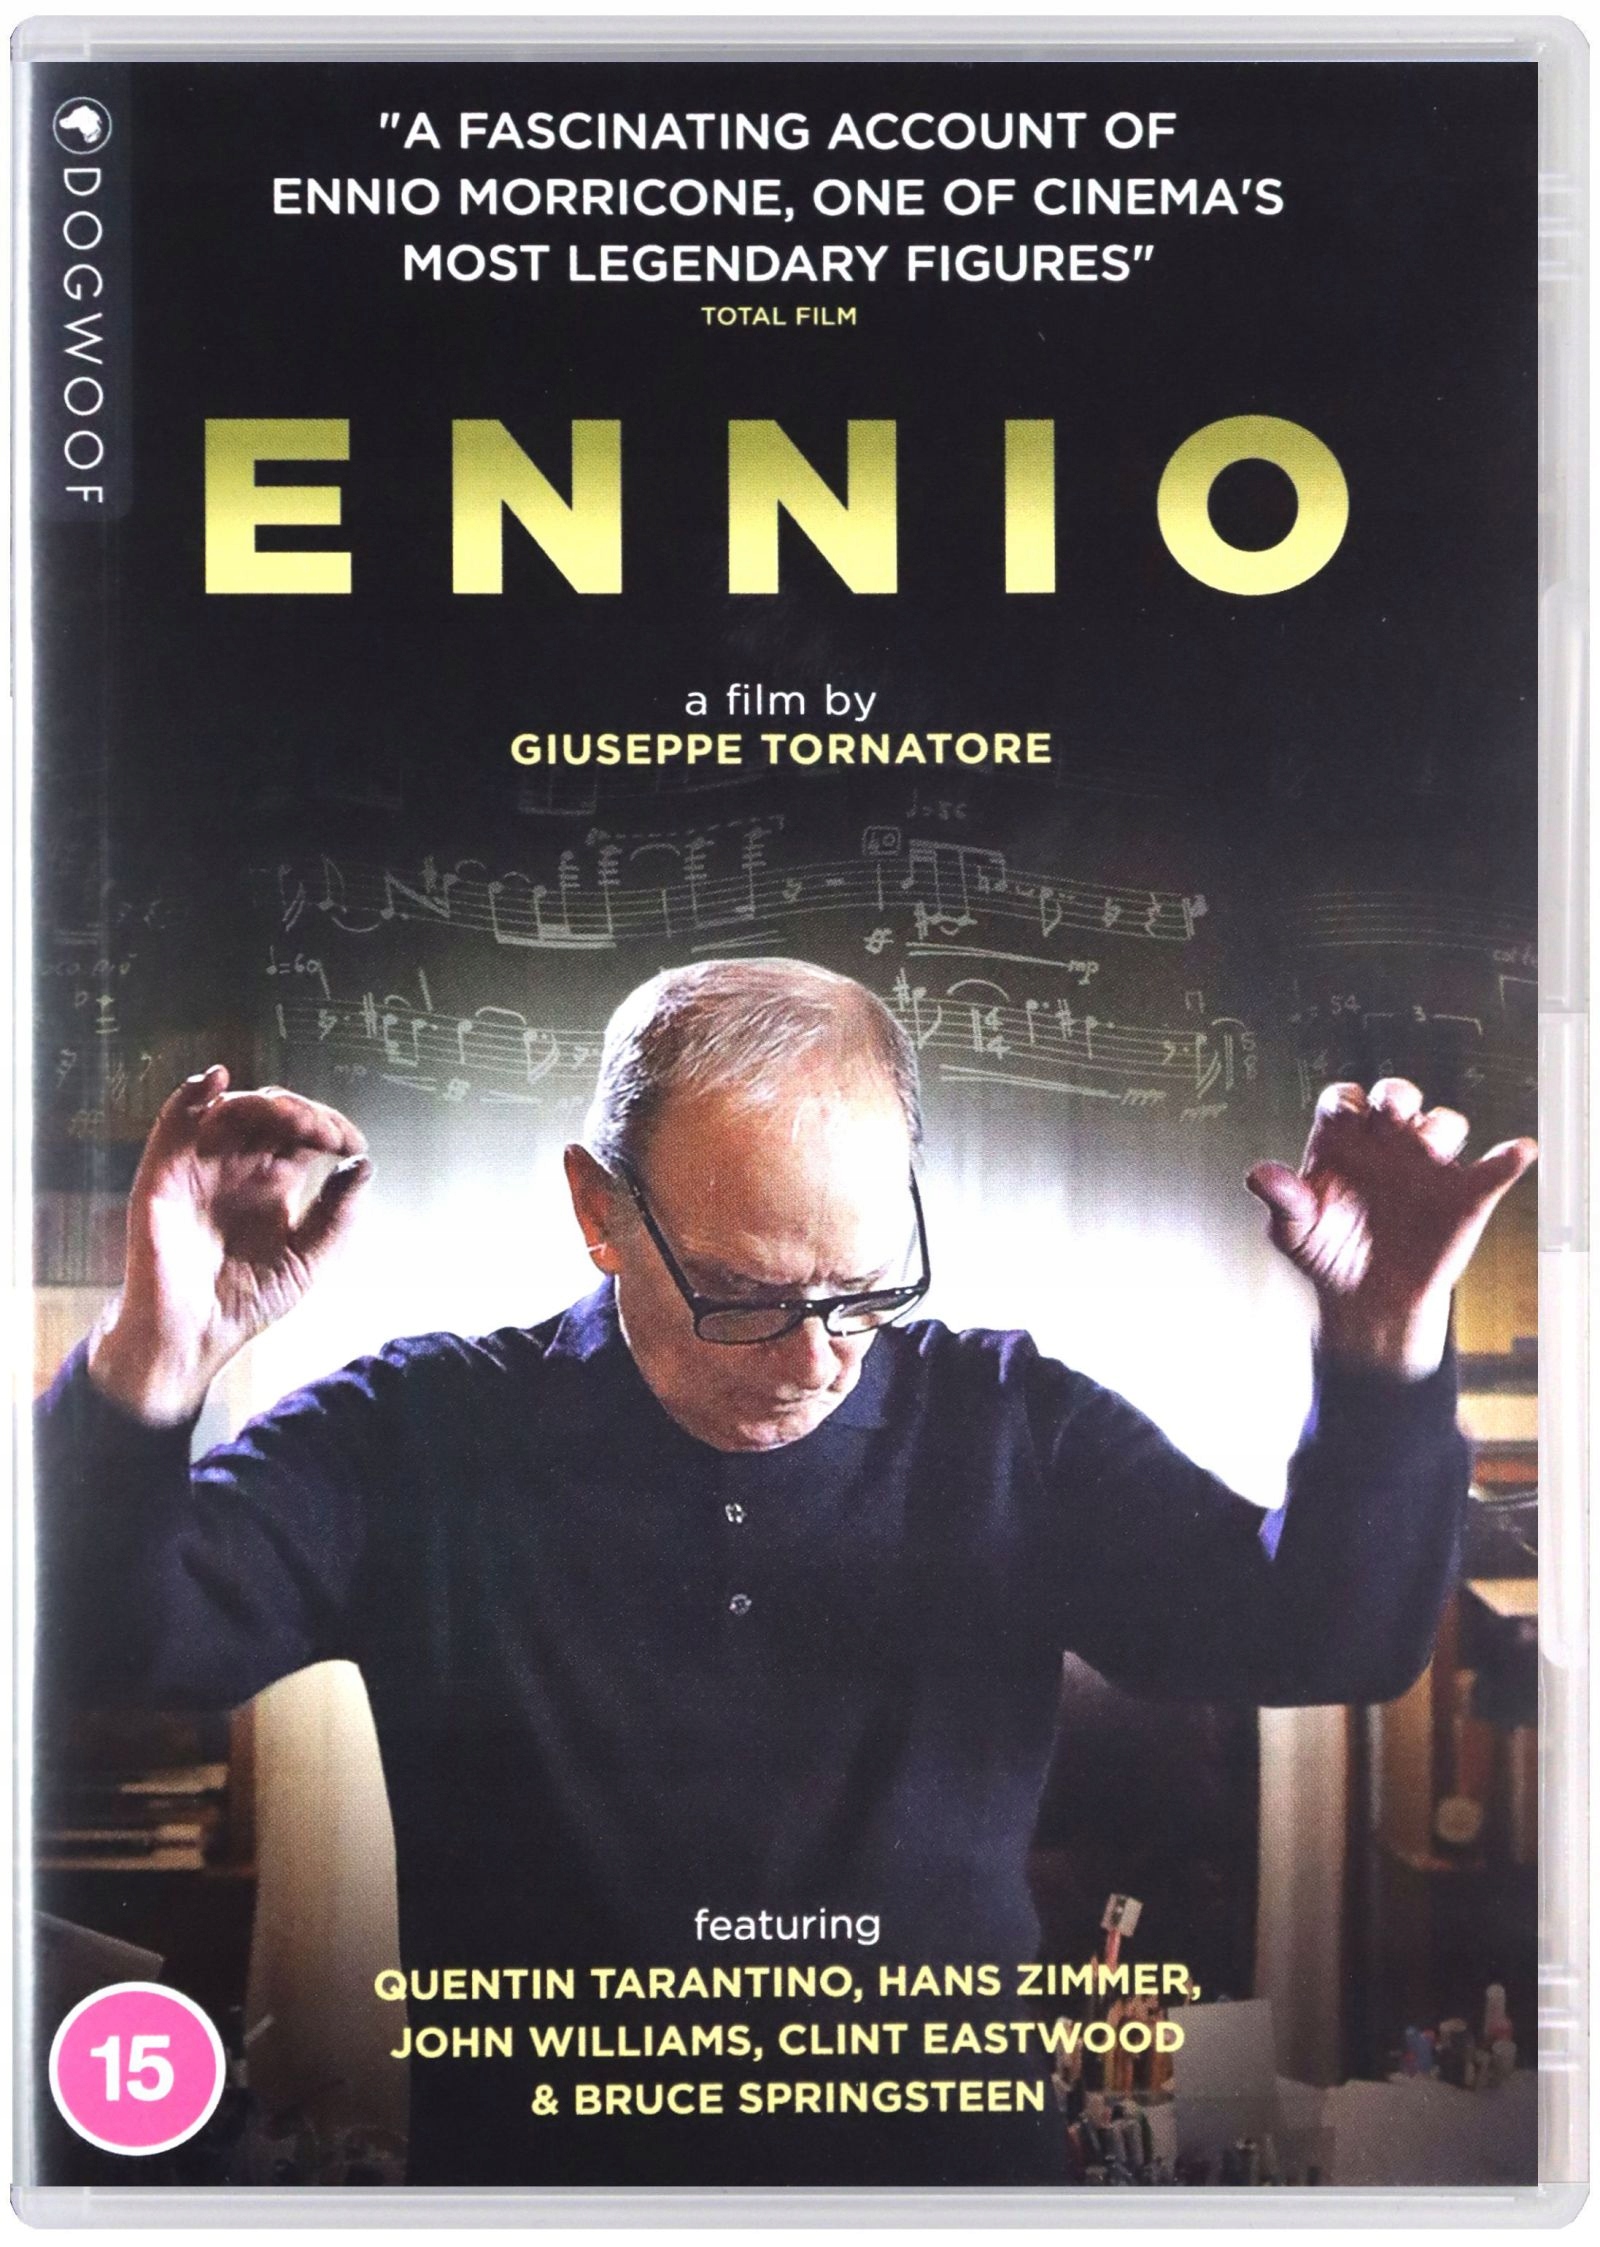 Depender de Hizo un contrato Bailarín ENNIO: THE MAESTRO [DVD] 12258953833 - Sklepy, Opinie, Ceny w Allegro.pl